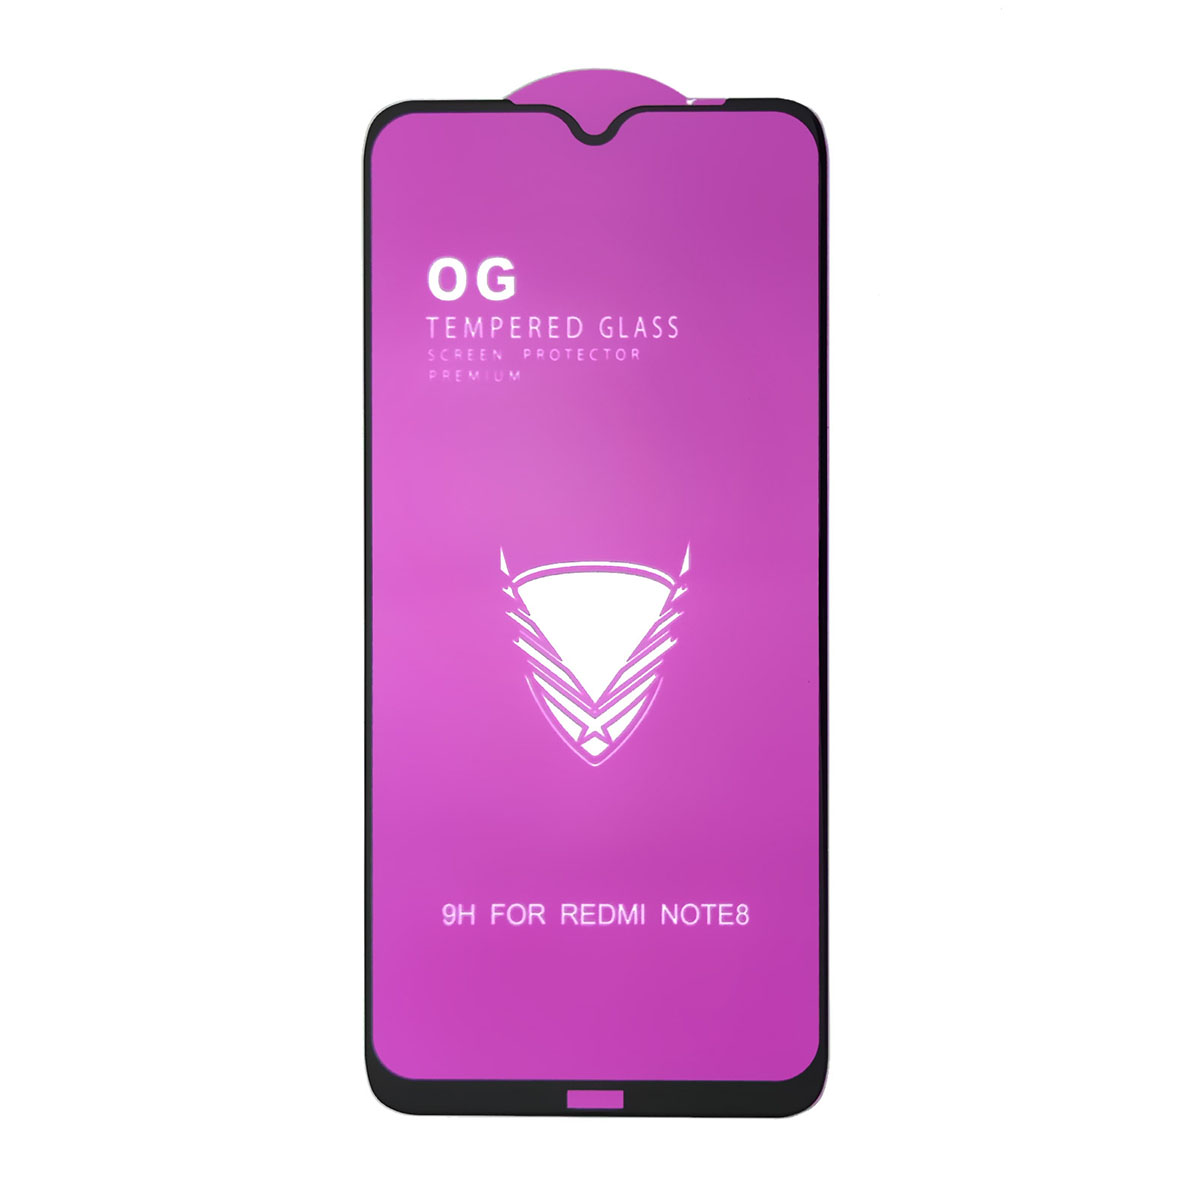 Защитное стекло 9H OG для XIAOMI Redmi Note 8, HUAWEI Honor 9A, цвет окантовки черный.